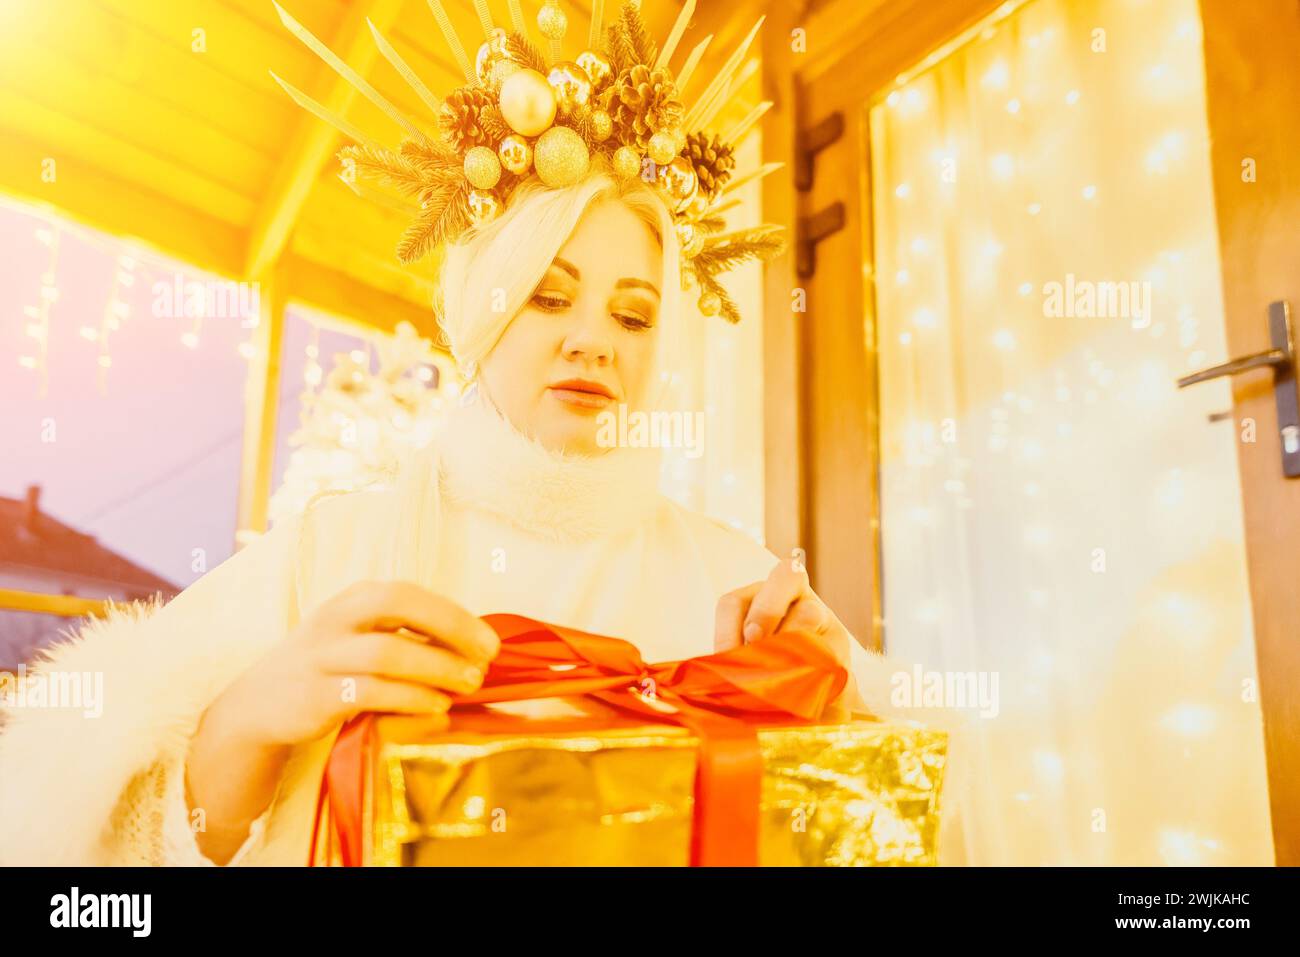 Eine Frau in einem weißen Kleid hält eine goldene Box mit einem roten Band. Sie trägt eine Krone auf dem Kopf. Die Frau scheint die Geschenkbox zu öffnen. Stockfoto